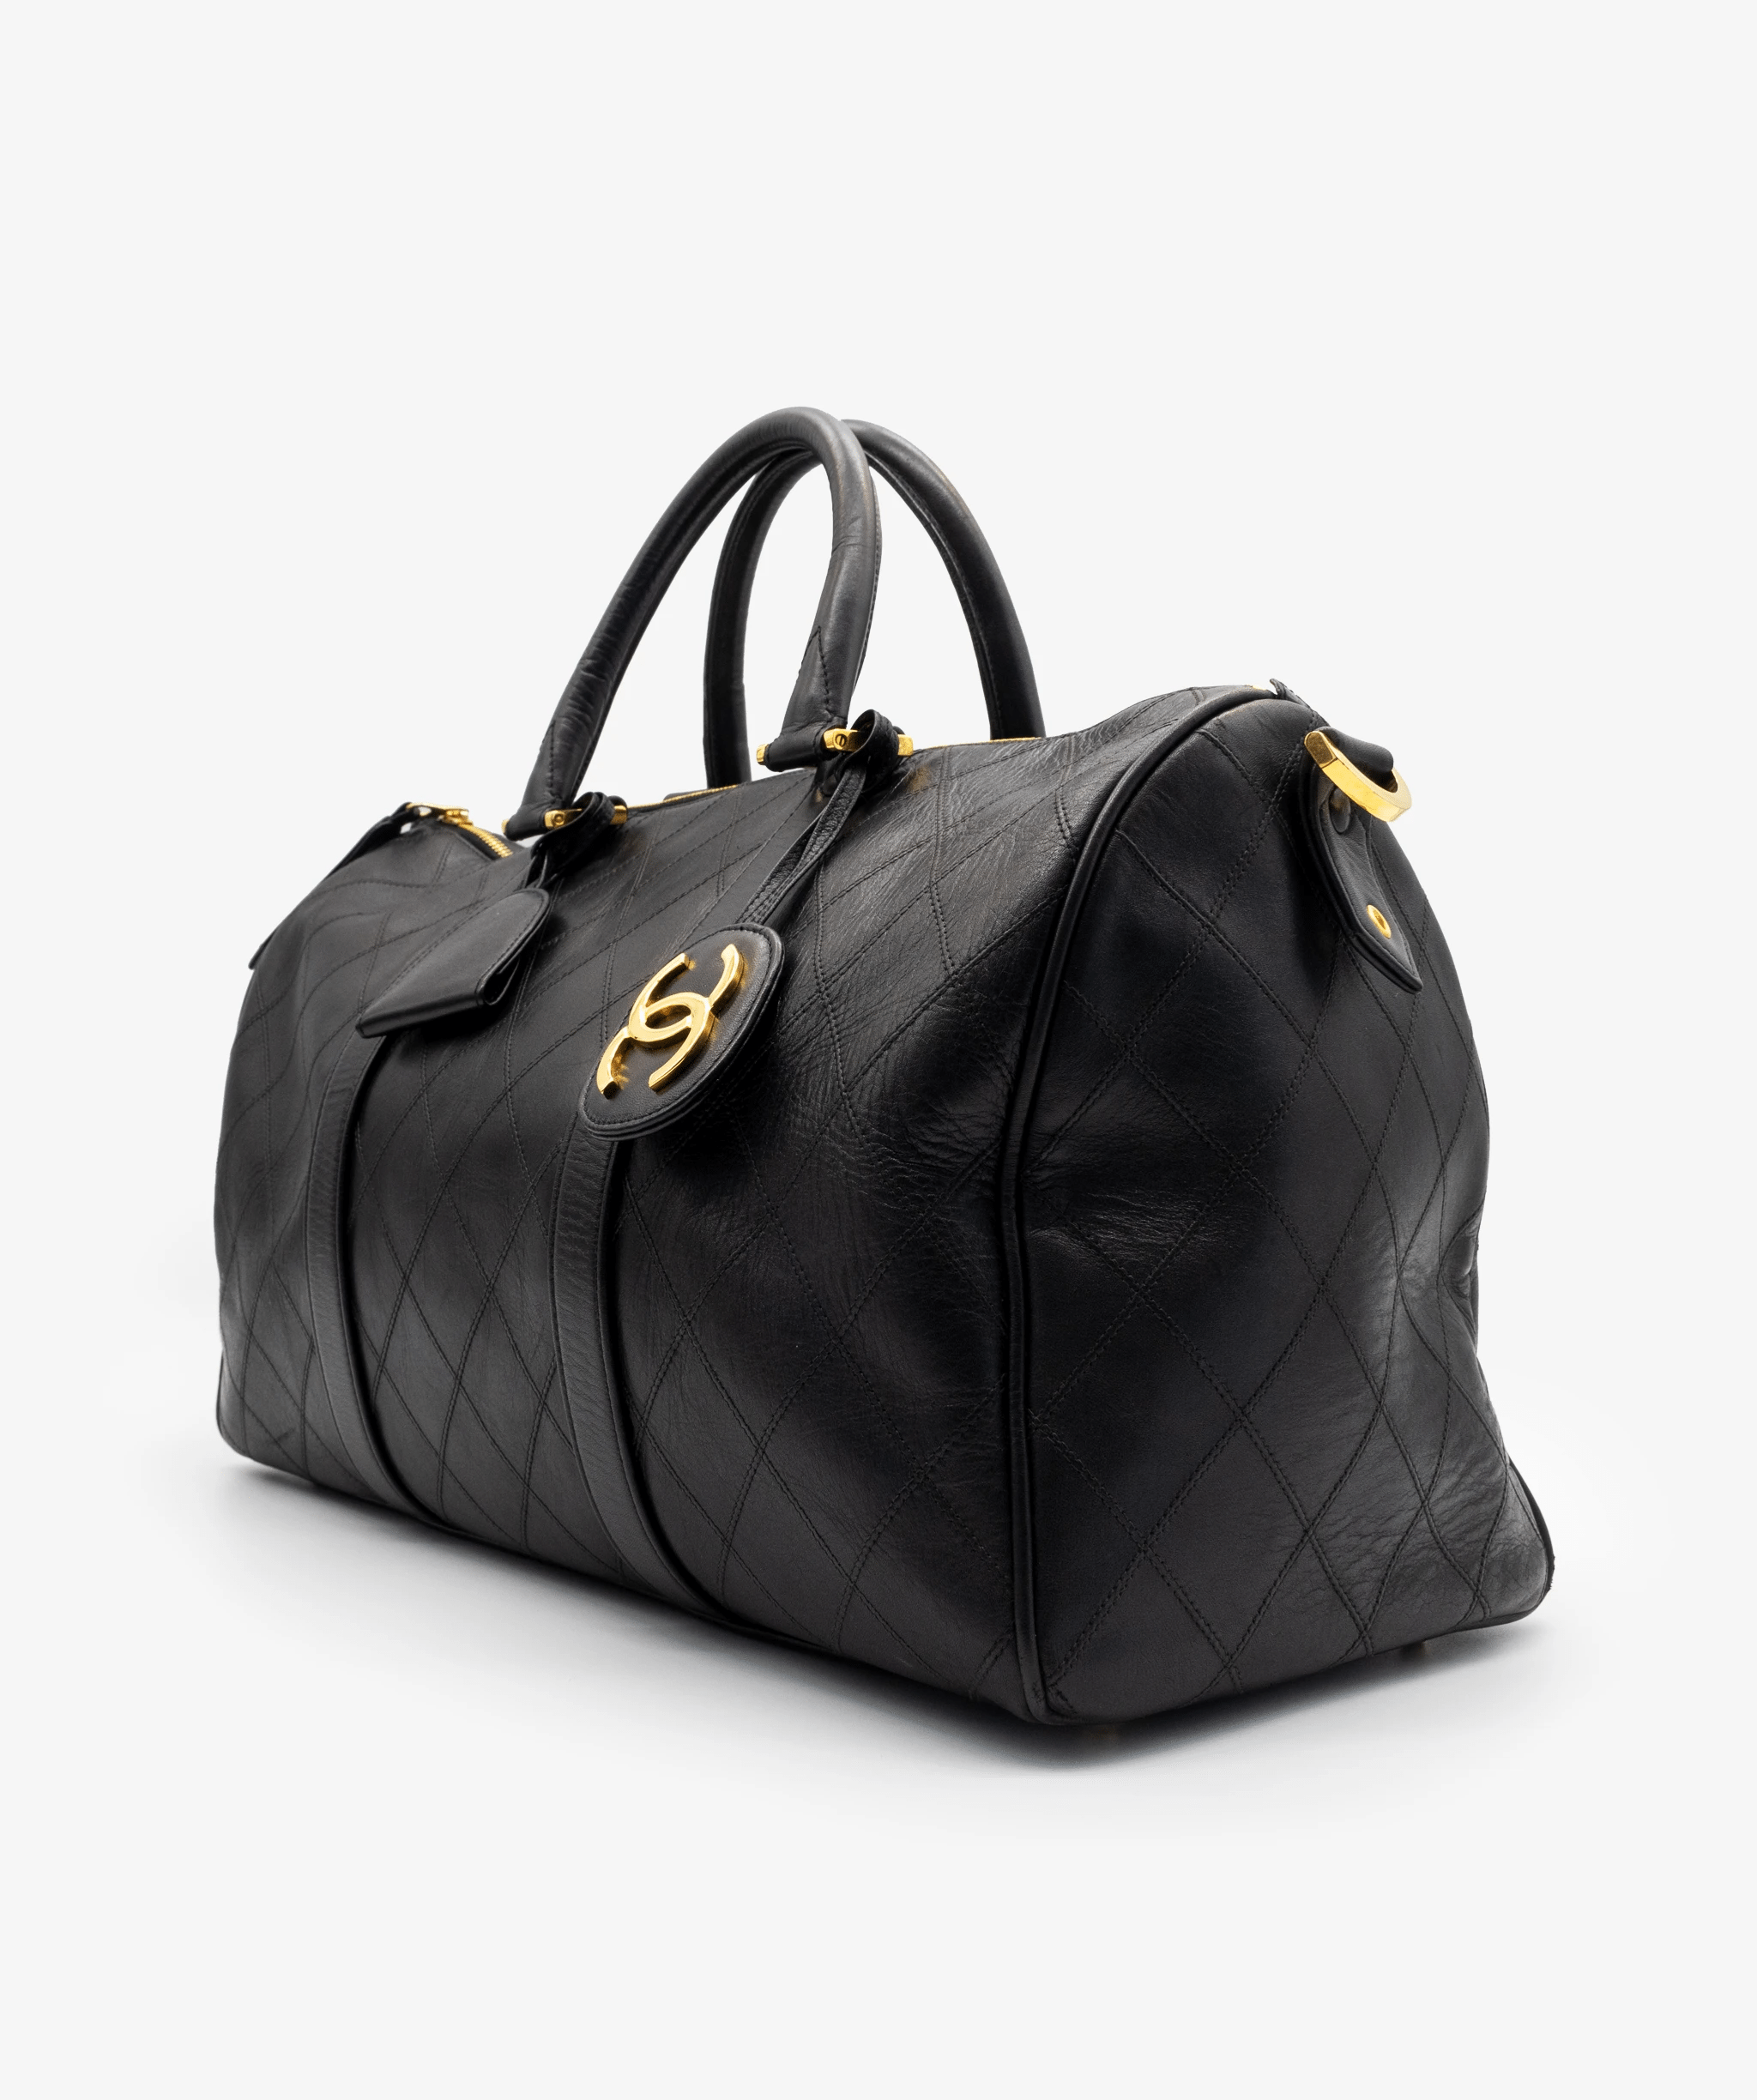 Chanel Chanel Boston Bag Lambskin 40